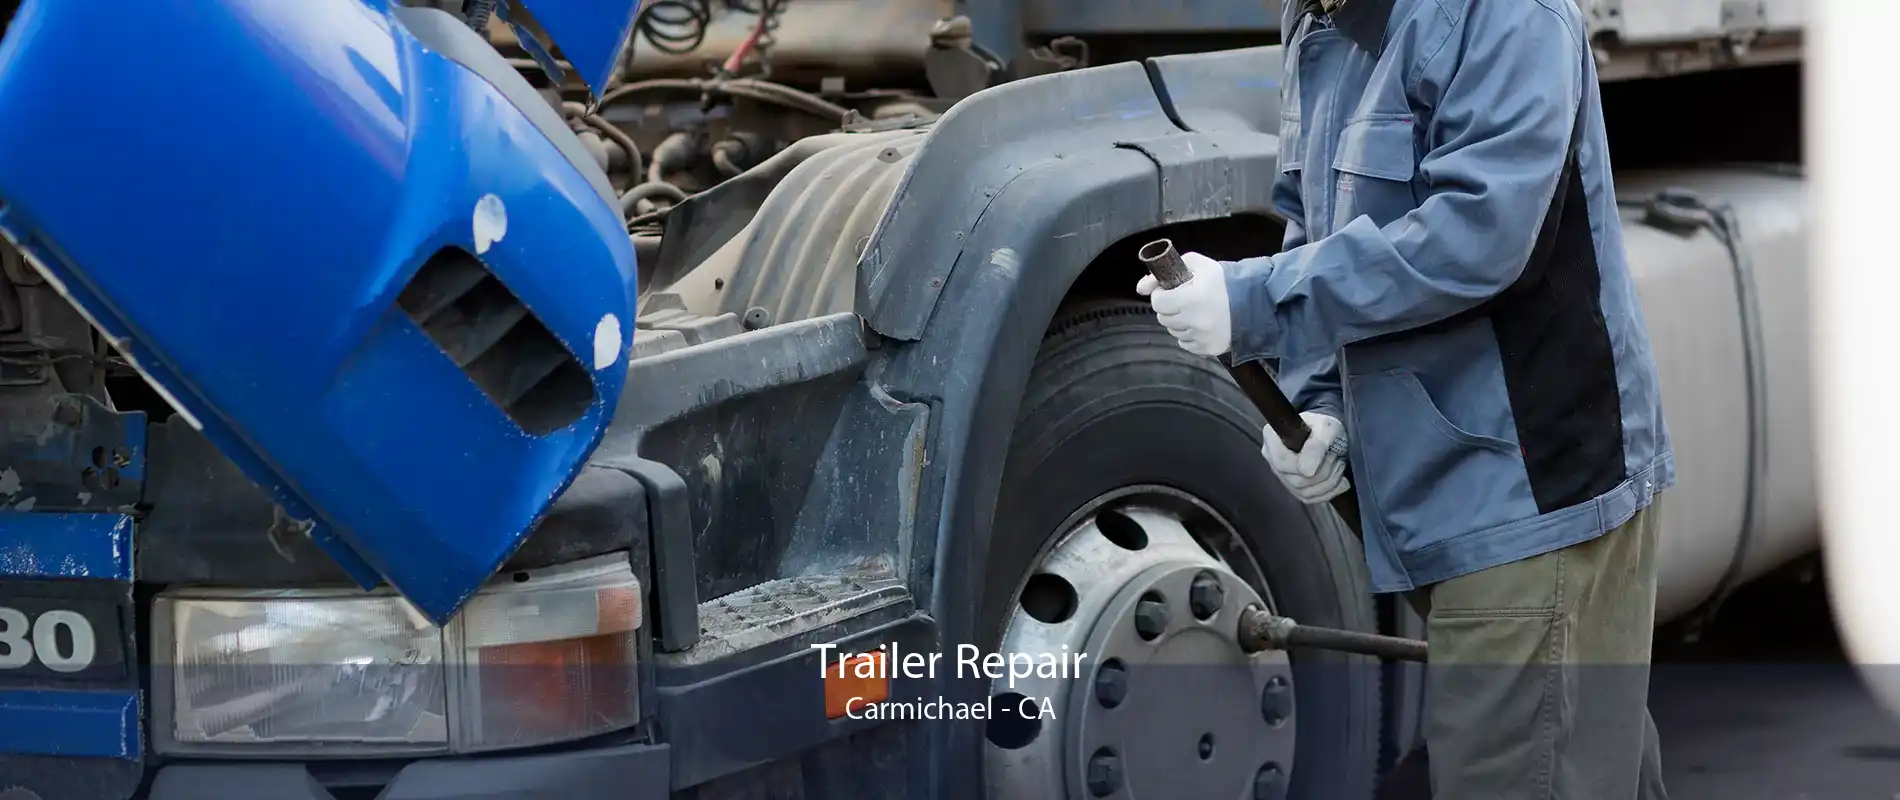 Trailer Repair Carmichael - CA